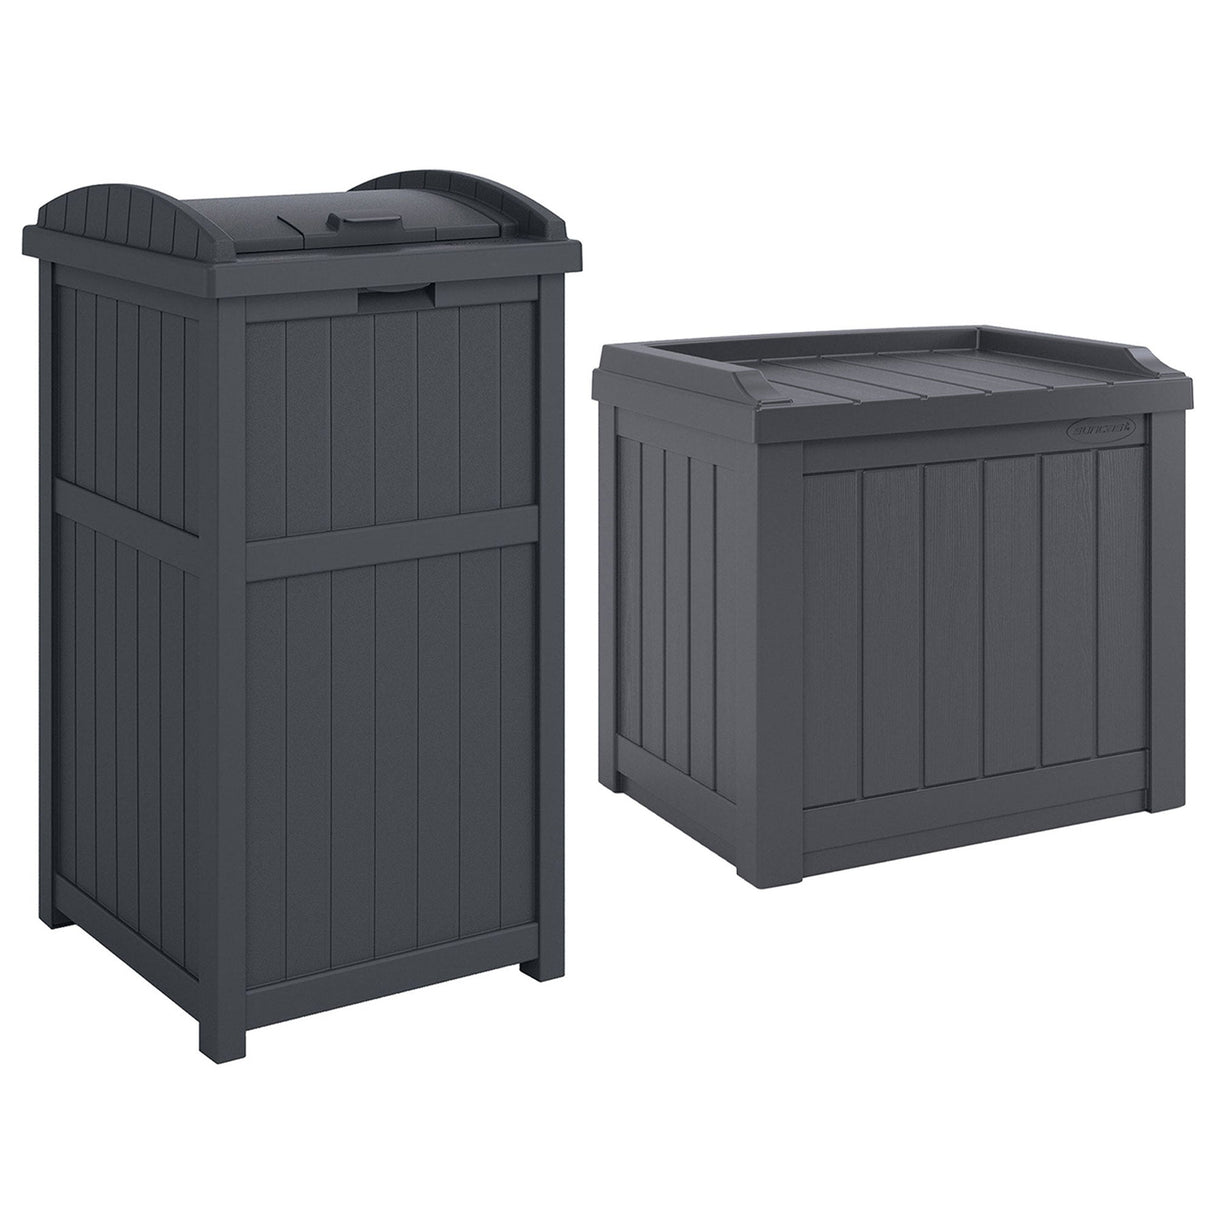 Suncast 22 Gallon Outdoor Small Deck Box & 30 Gallon Trash Waste Bin, Cyberspace